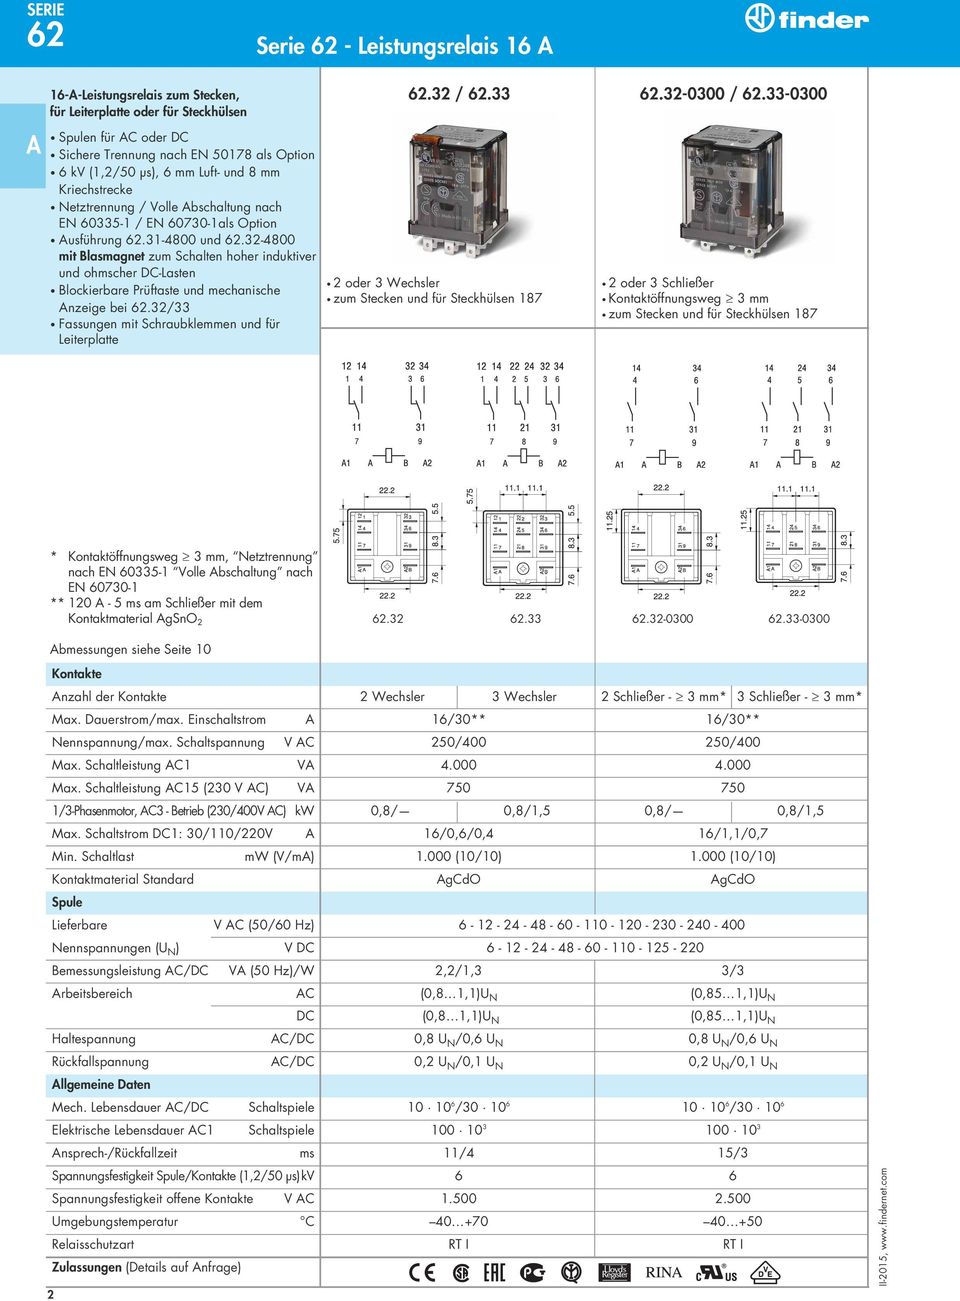 32-4800 mit Blasmagnet zum Schalten hoher induktiver und ohmscher DC-Lasten Blockierbare Prüftaste und mechanische nzeige bei 62.32/33 Fassungen mit Schraubklemmen und für Leiterplatte 62.32 / 62.